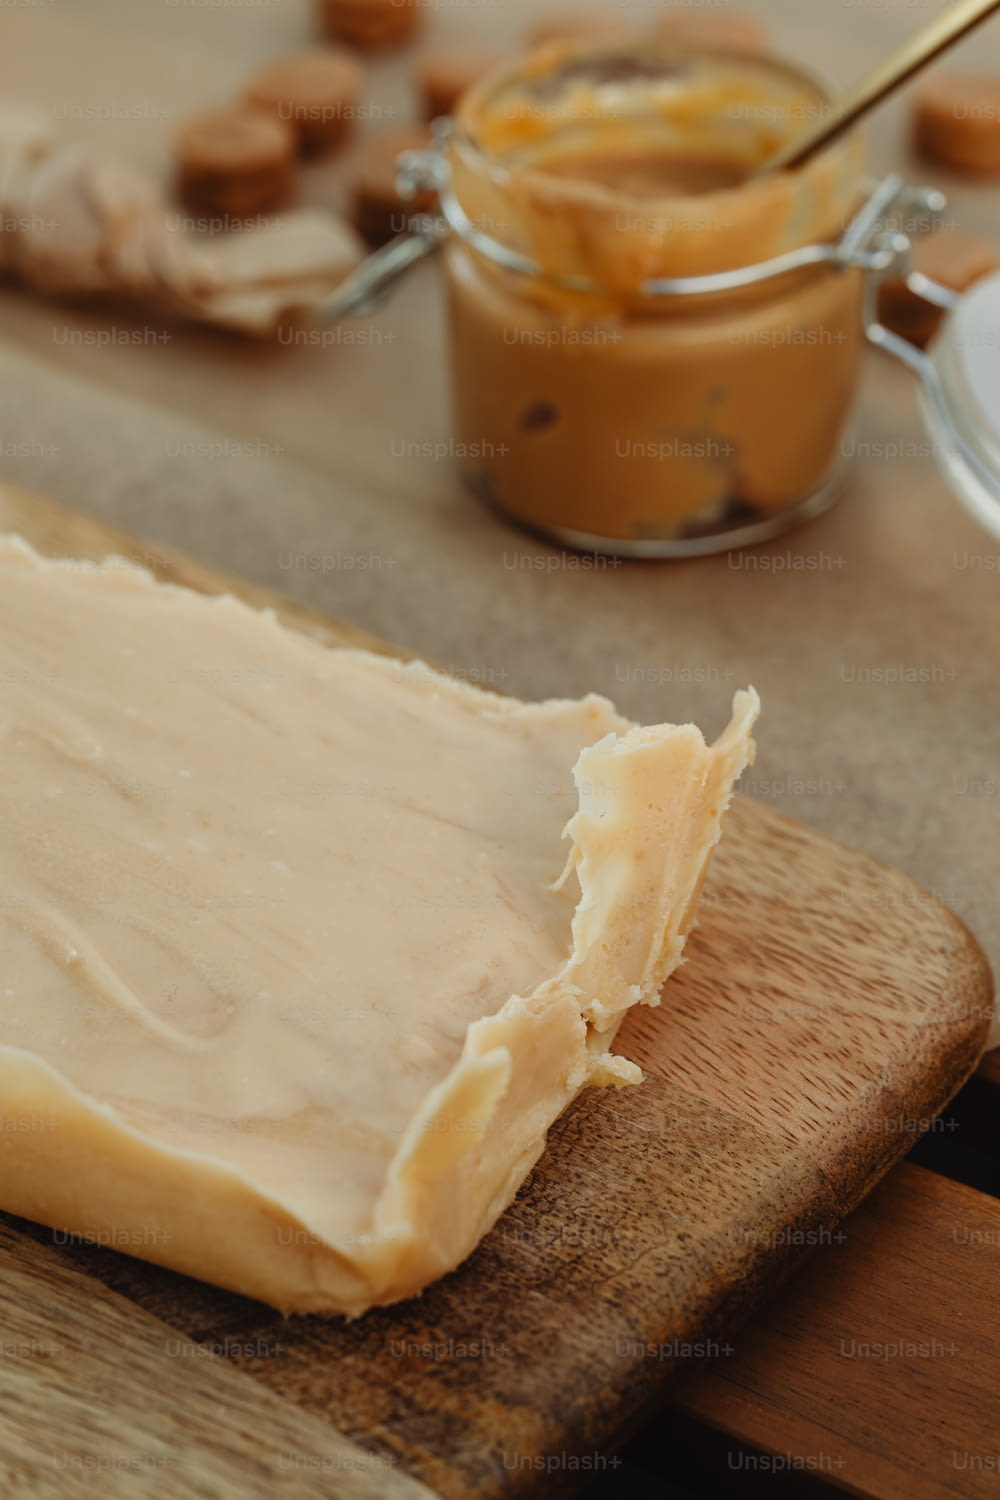 un morceau de fromage posé sur une planche à découper en bois